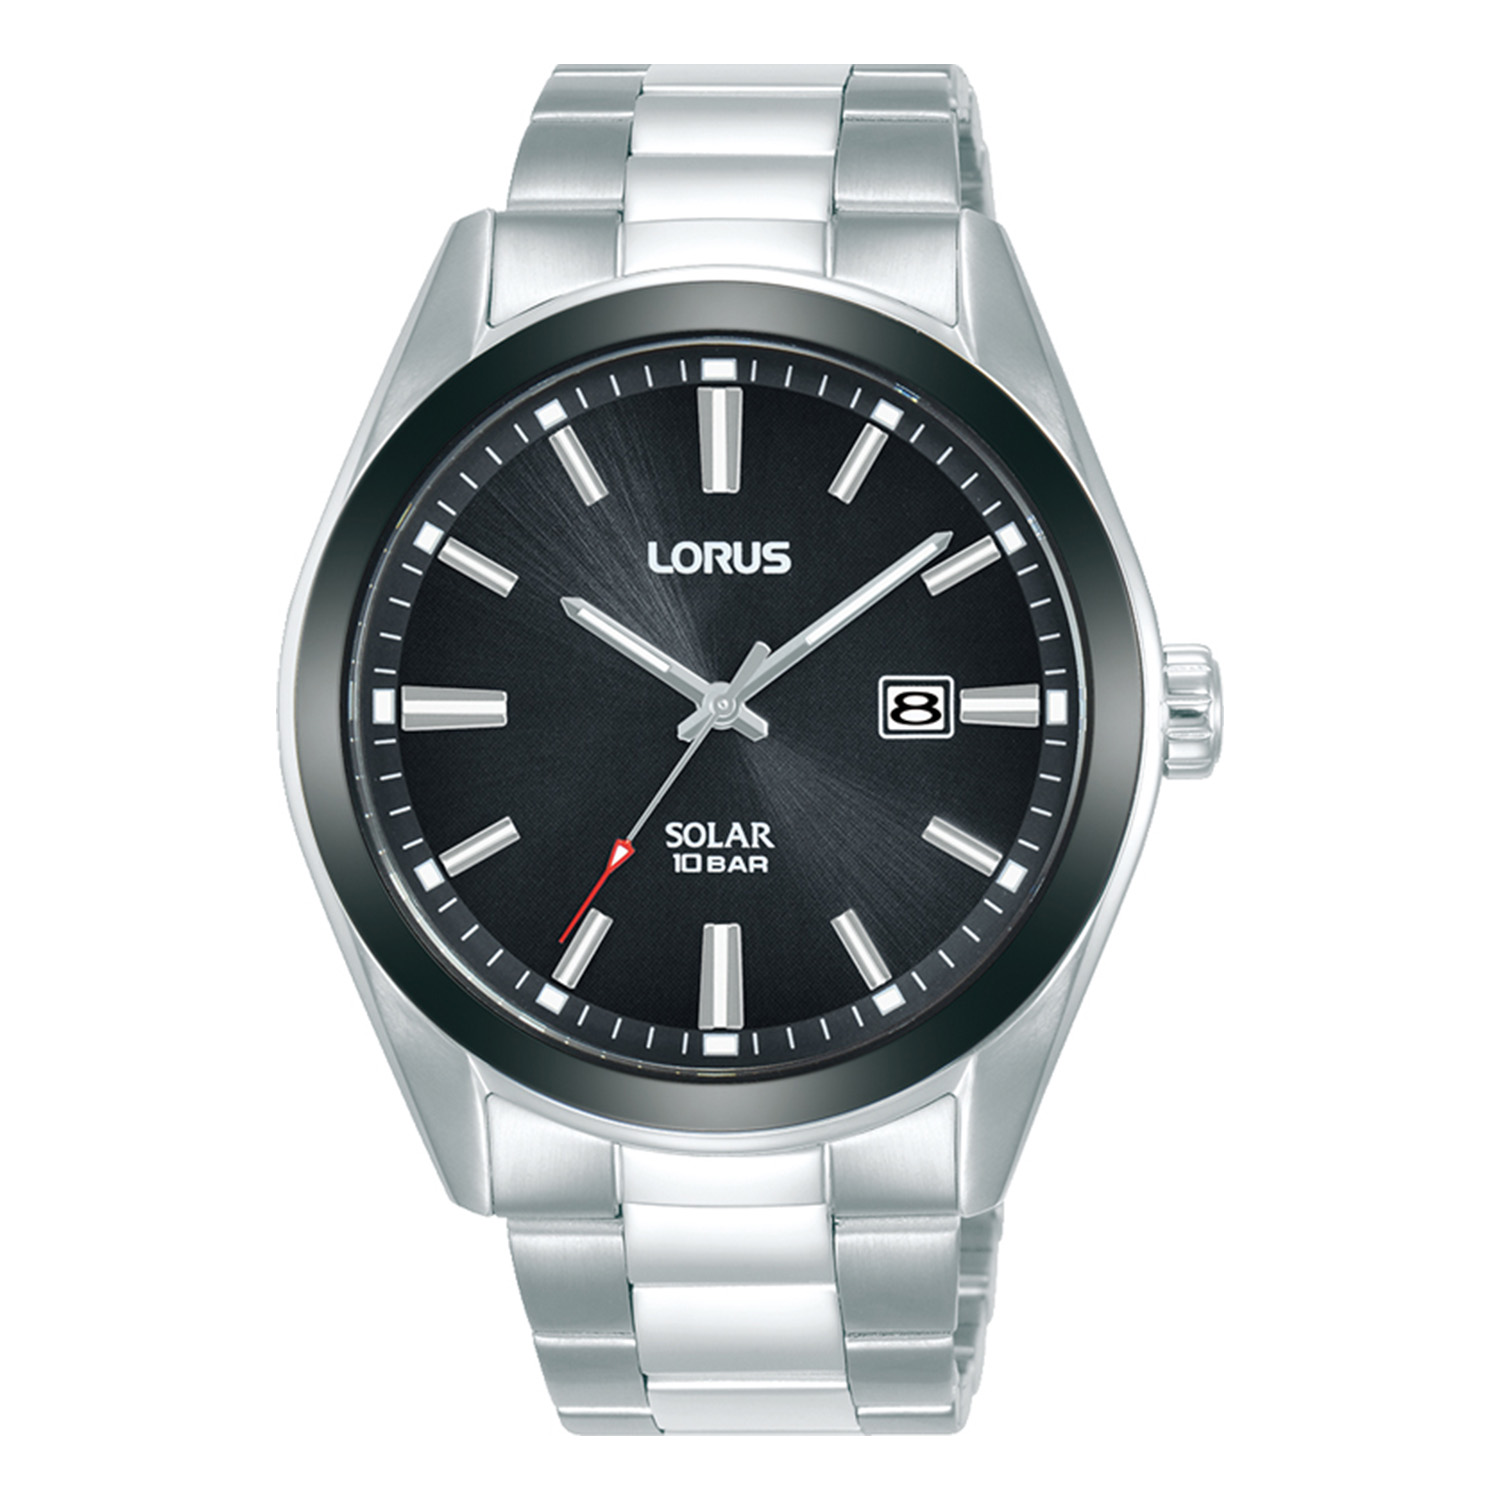 Ανδρικό ρολόι Lorus Solar από ανοξείδωτο ατσάλι με μαύρο καντράν και ασημί μπρασελέ.